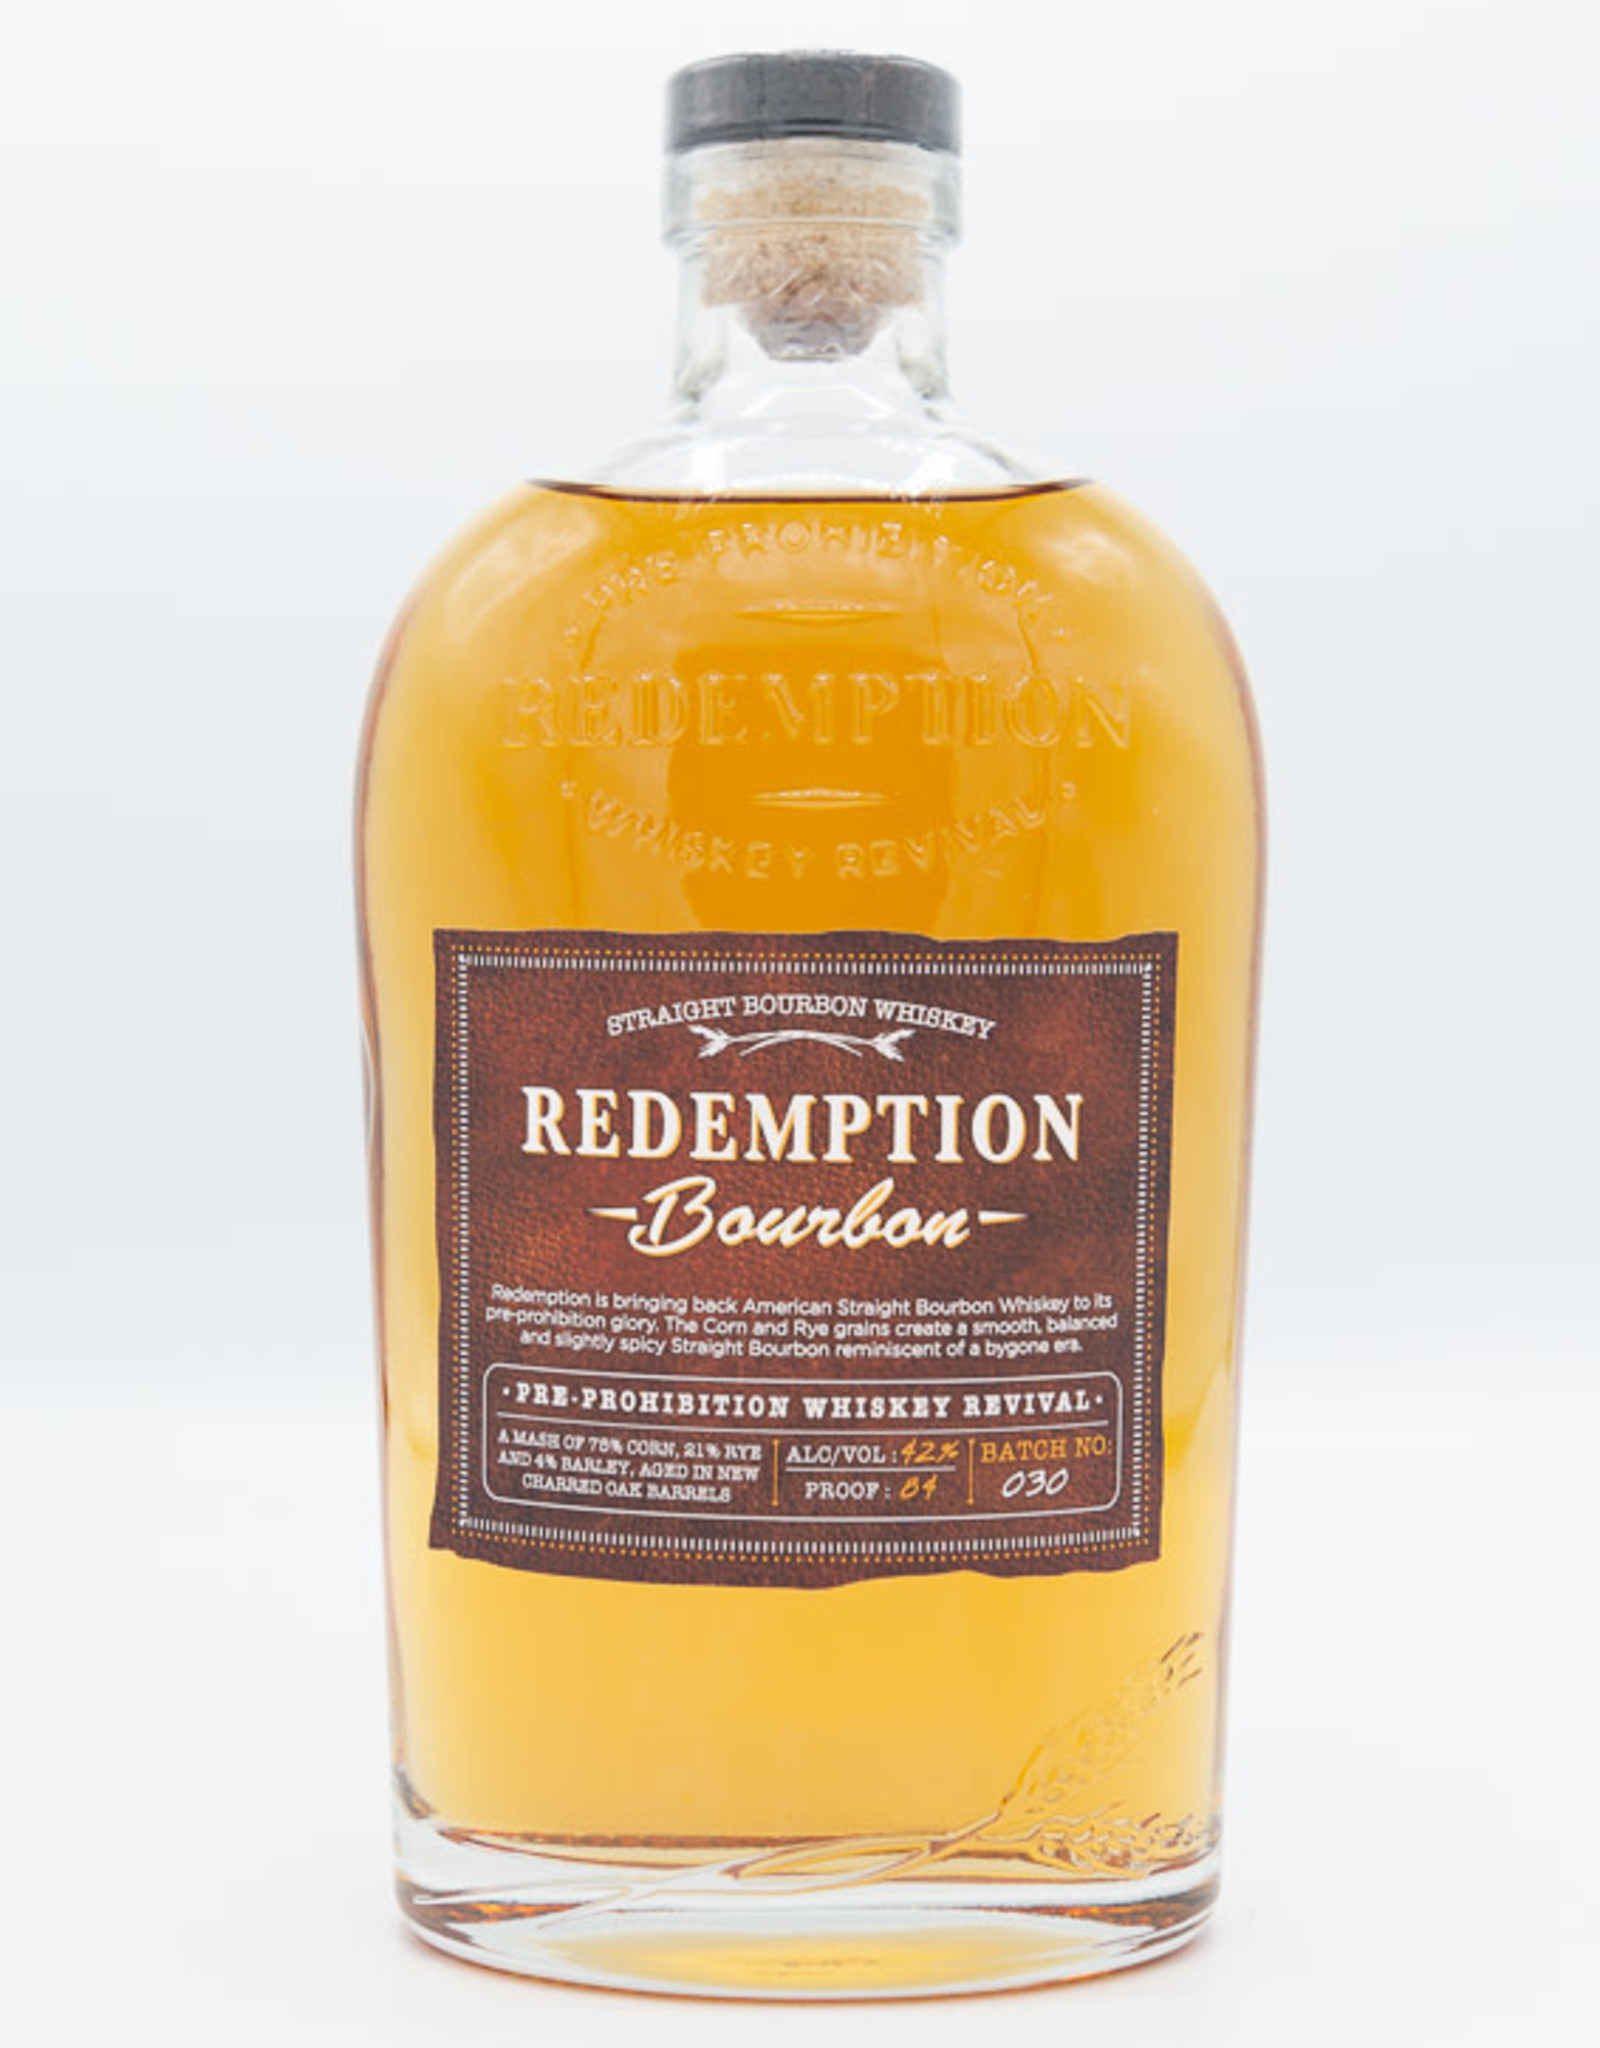 Redemption Redemption Straight Bourbon